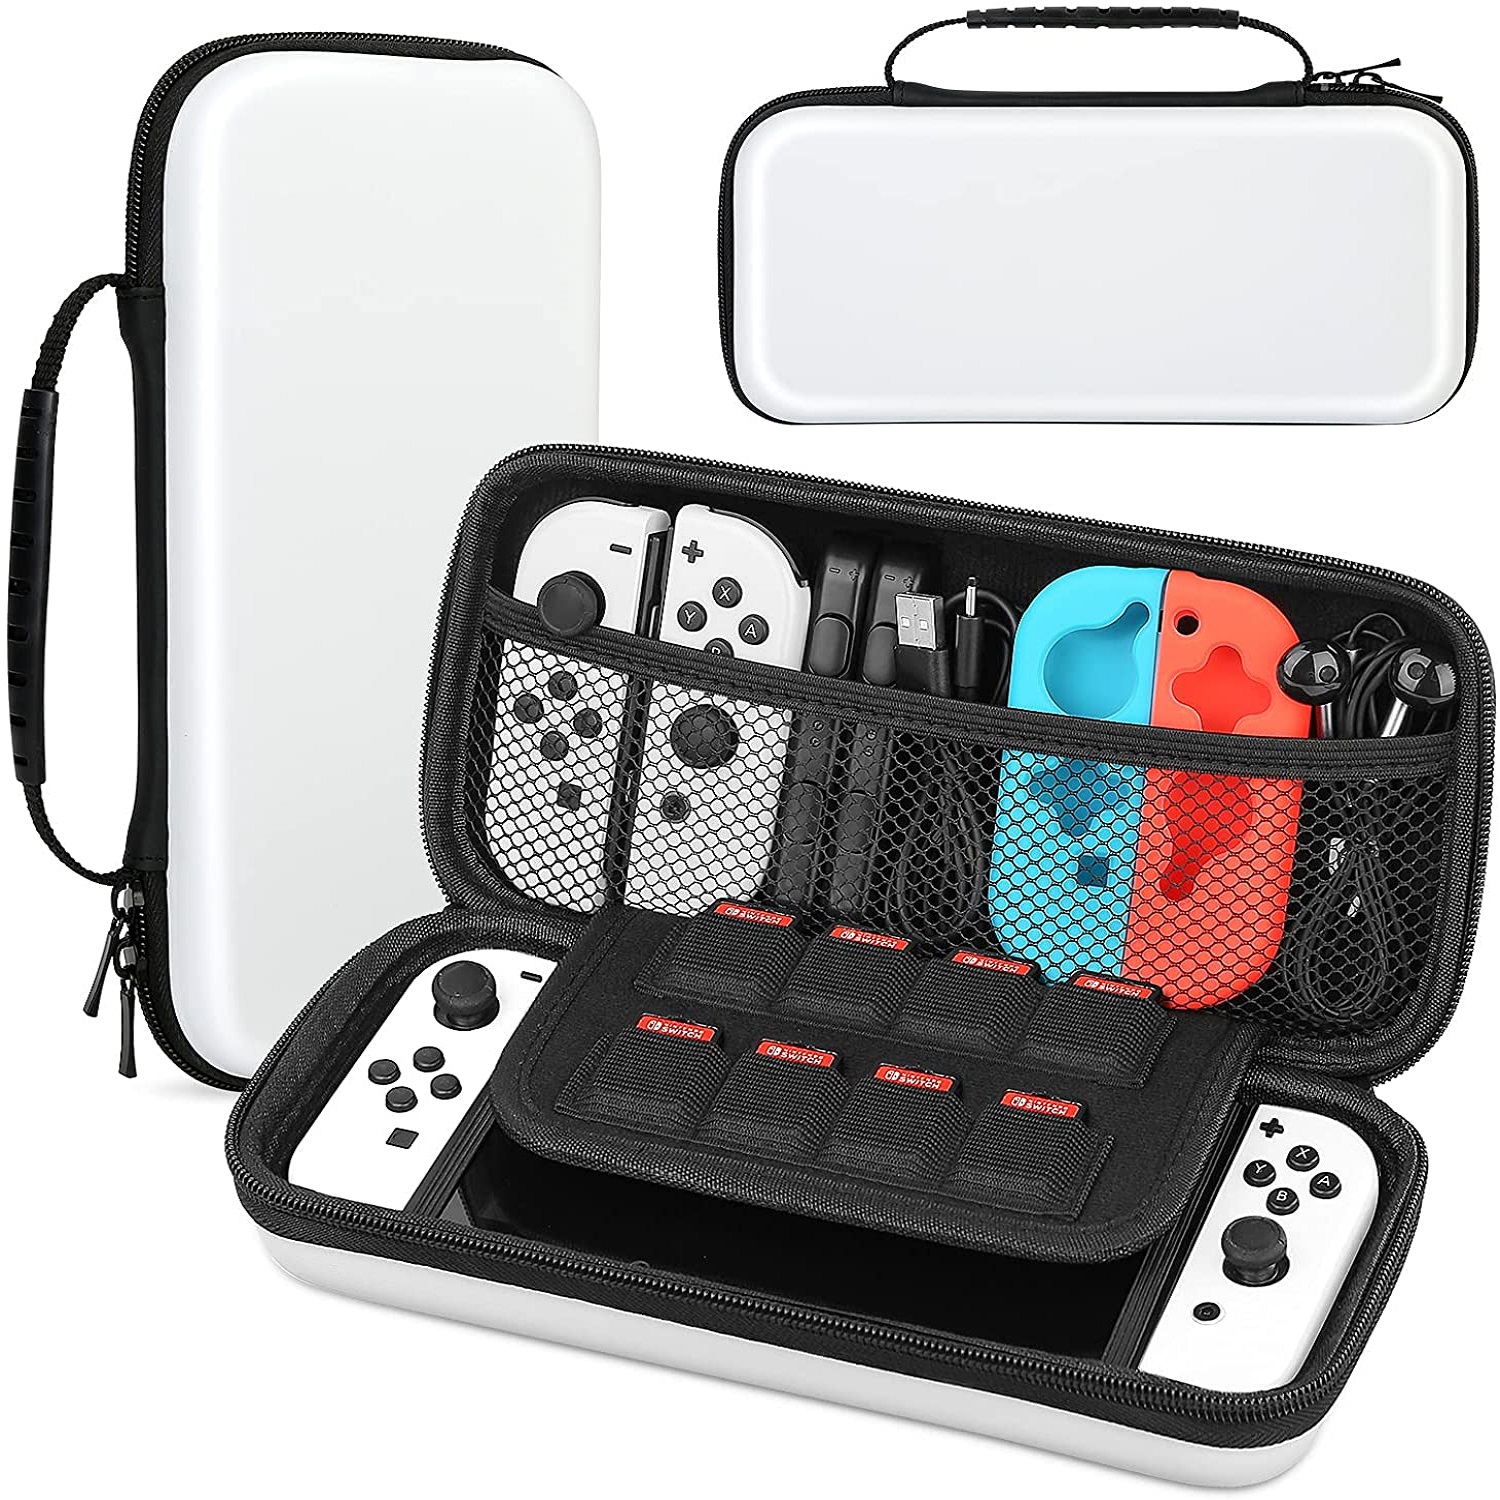 Custodia HEYSTOP per Nintendo Switch e modello OLED custodia protettiva rigida da viaggio portatile custodia a conchiglia per Console Nintendo Switch: White-switch-oled